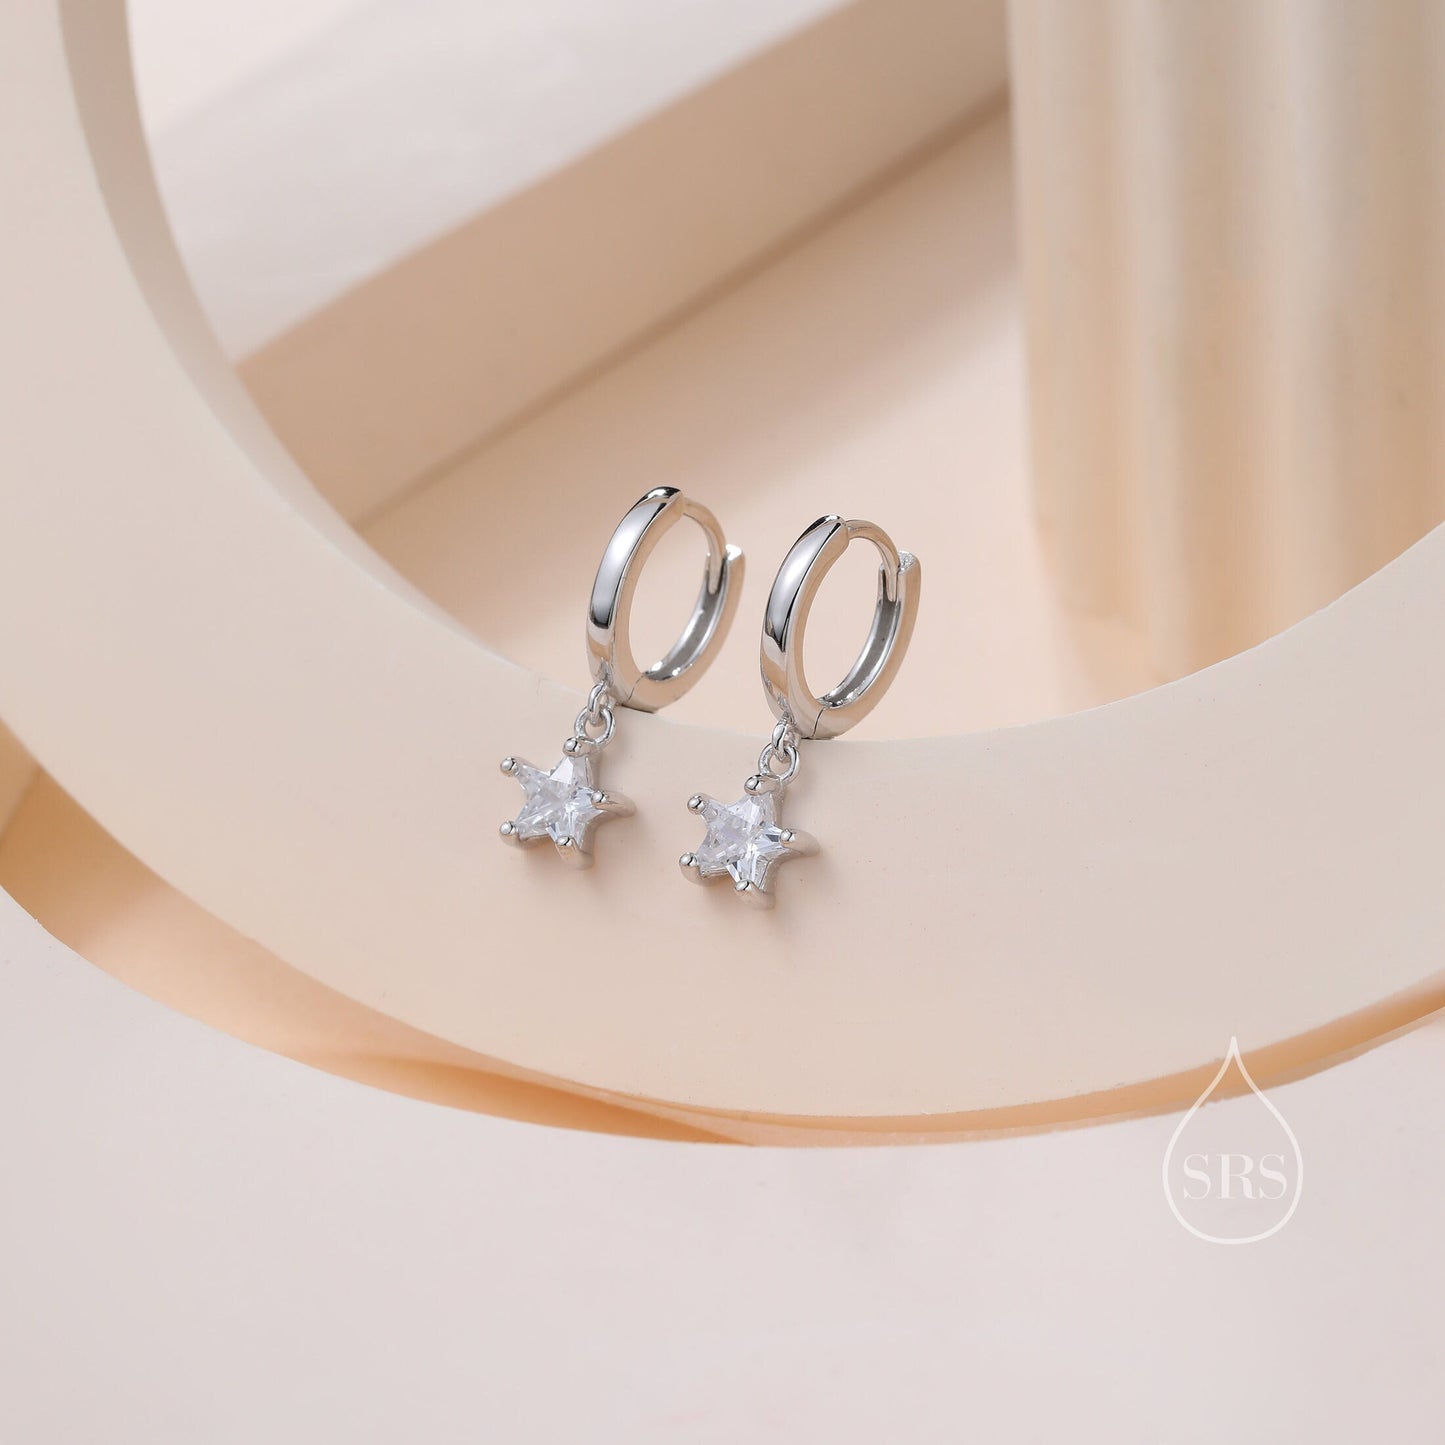 CZ Star Huggie Hoop Earrings in Sterling Silver, Silver or Gold, North Star Dangle Earrings, Sunburst Earrings, Celestial Jewellery